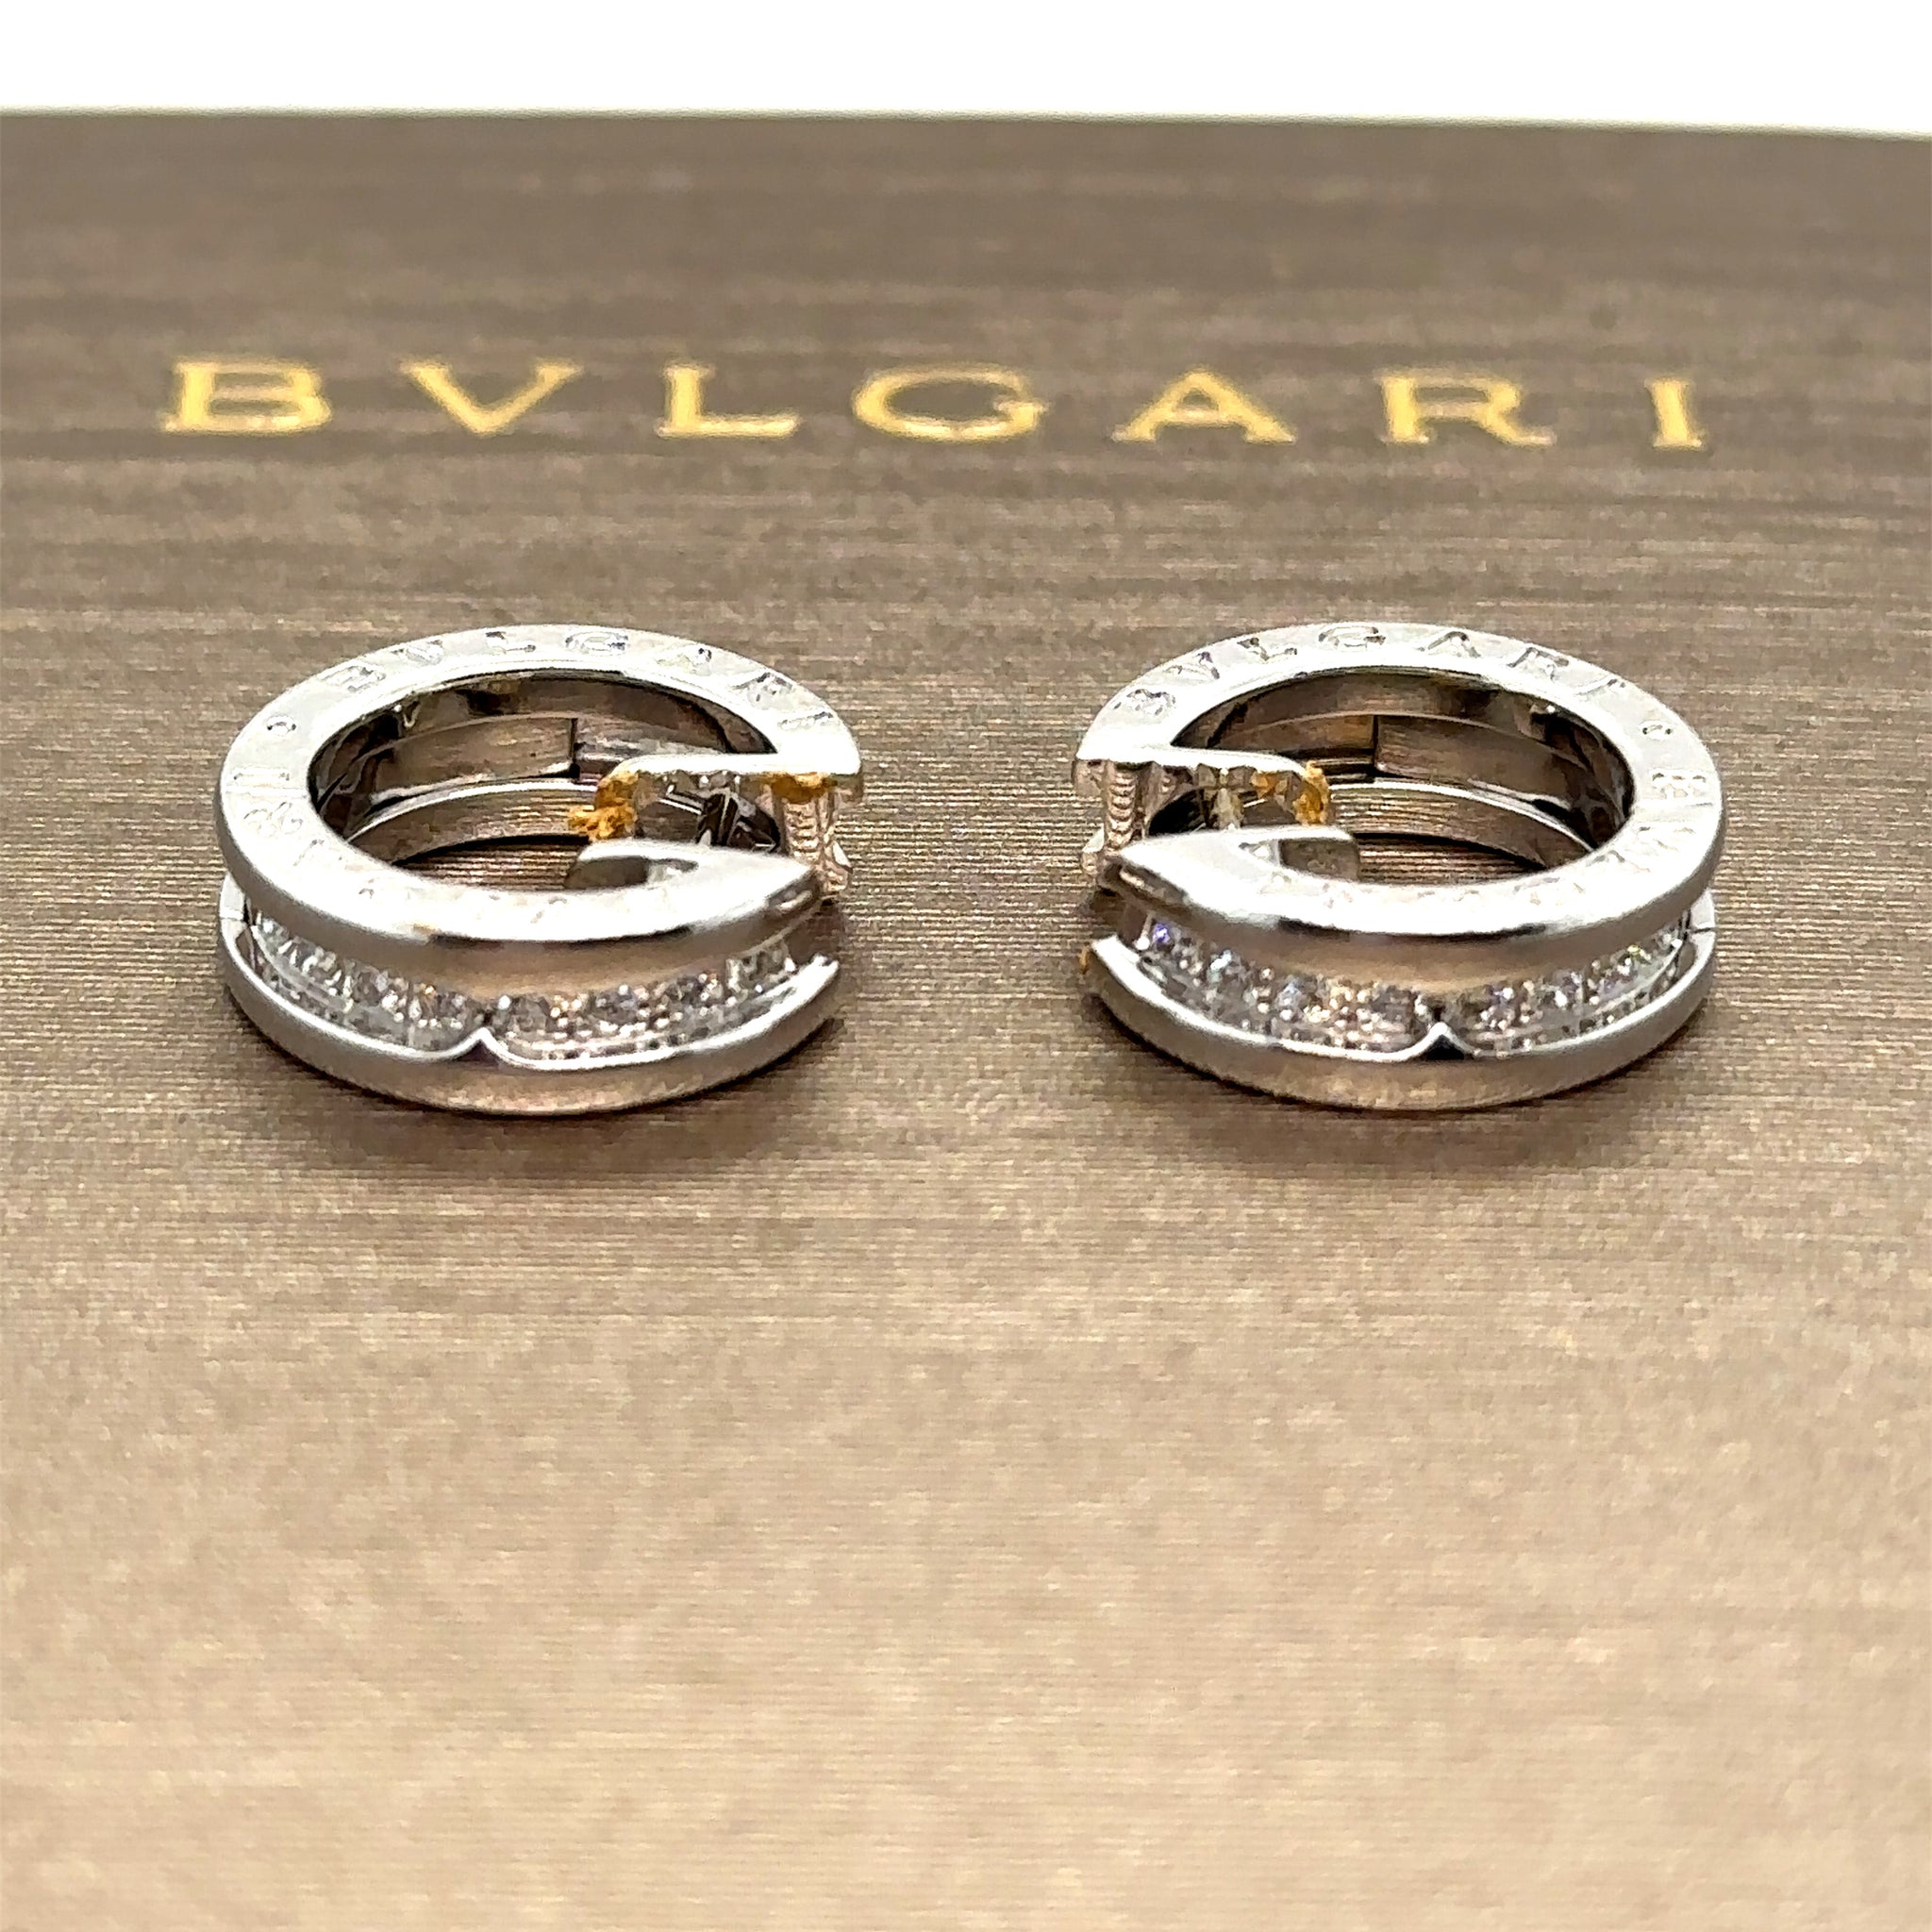 Bvlgari 18ct Gold Mother of Pearl Earrings - Earrings - Jewellery